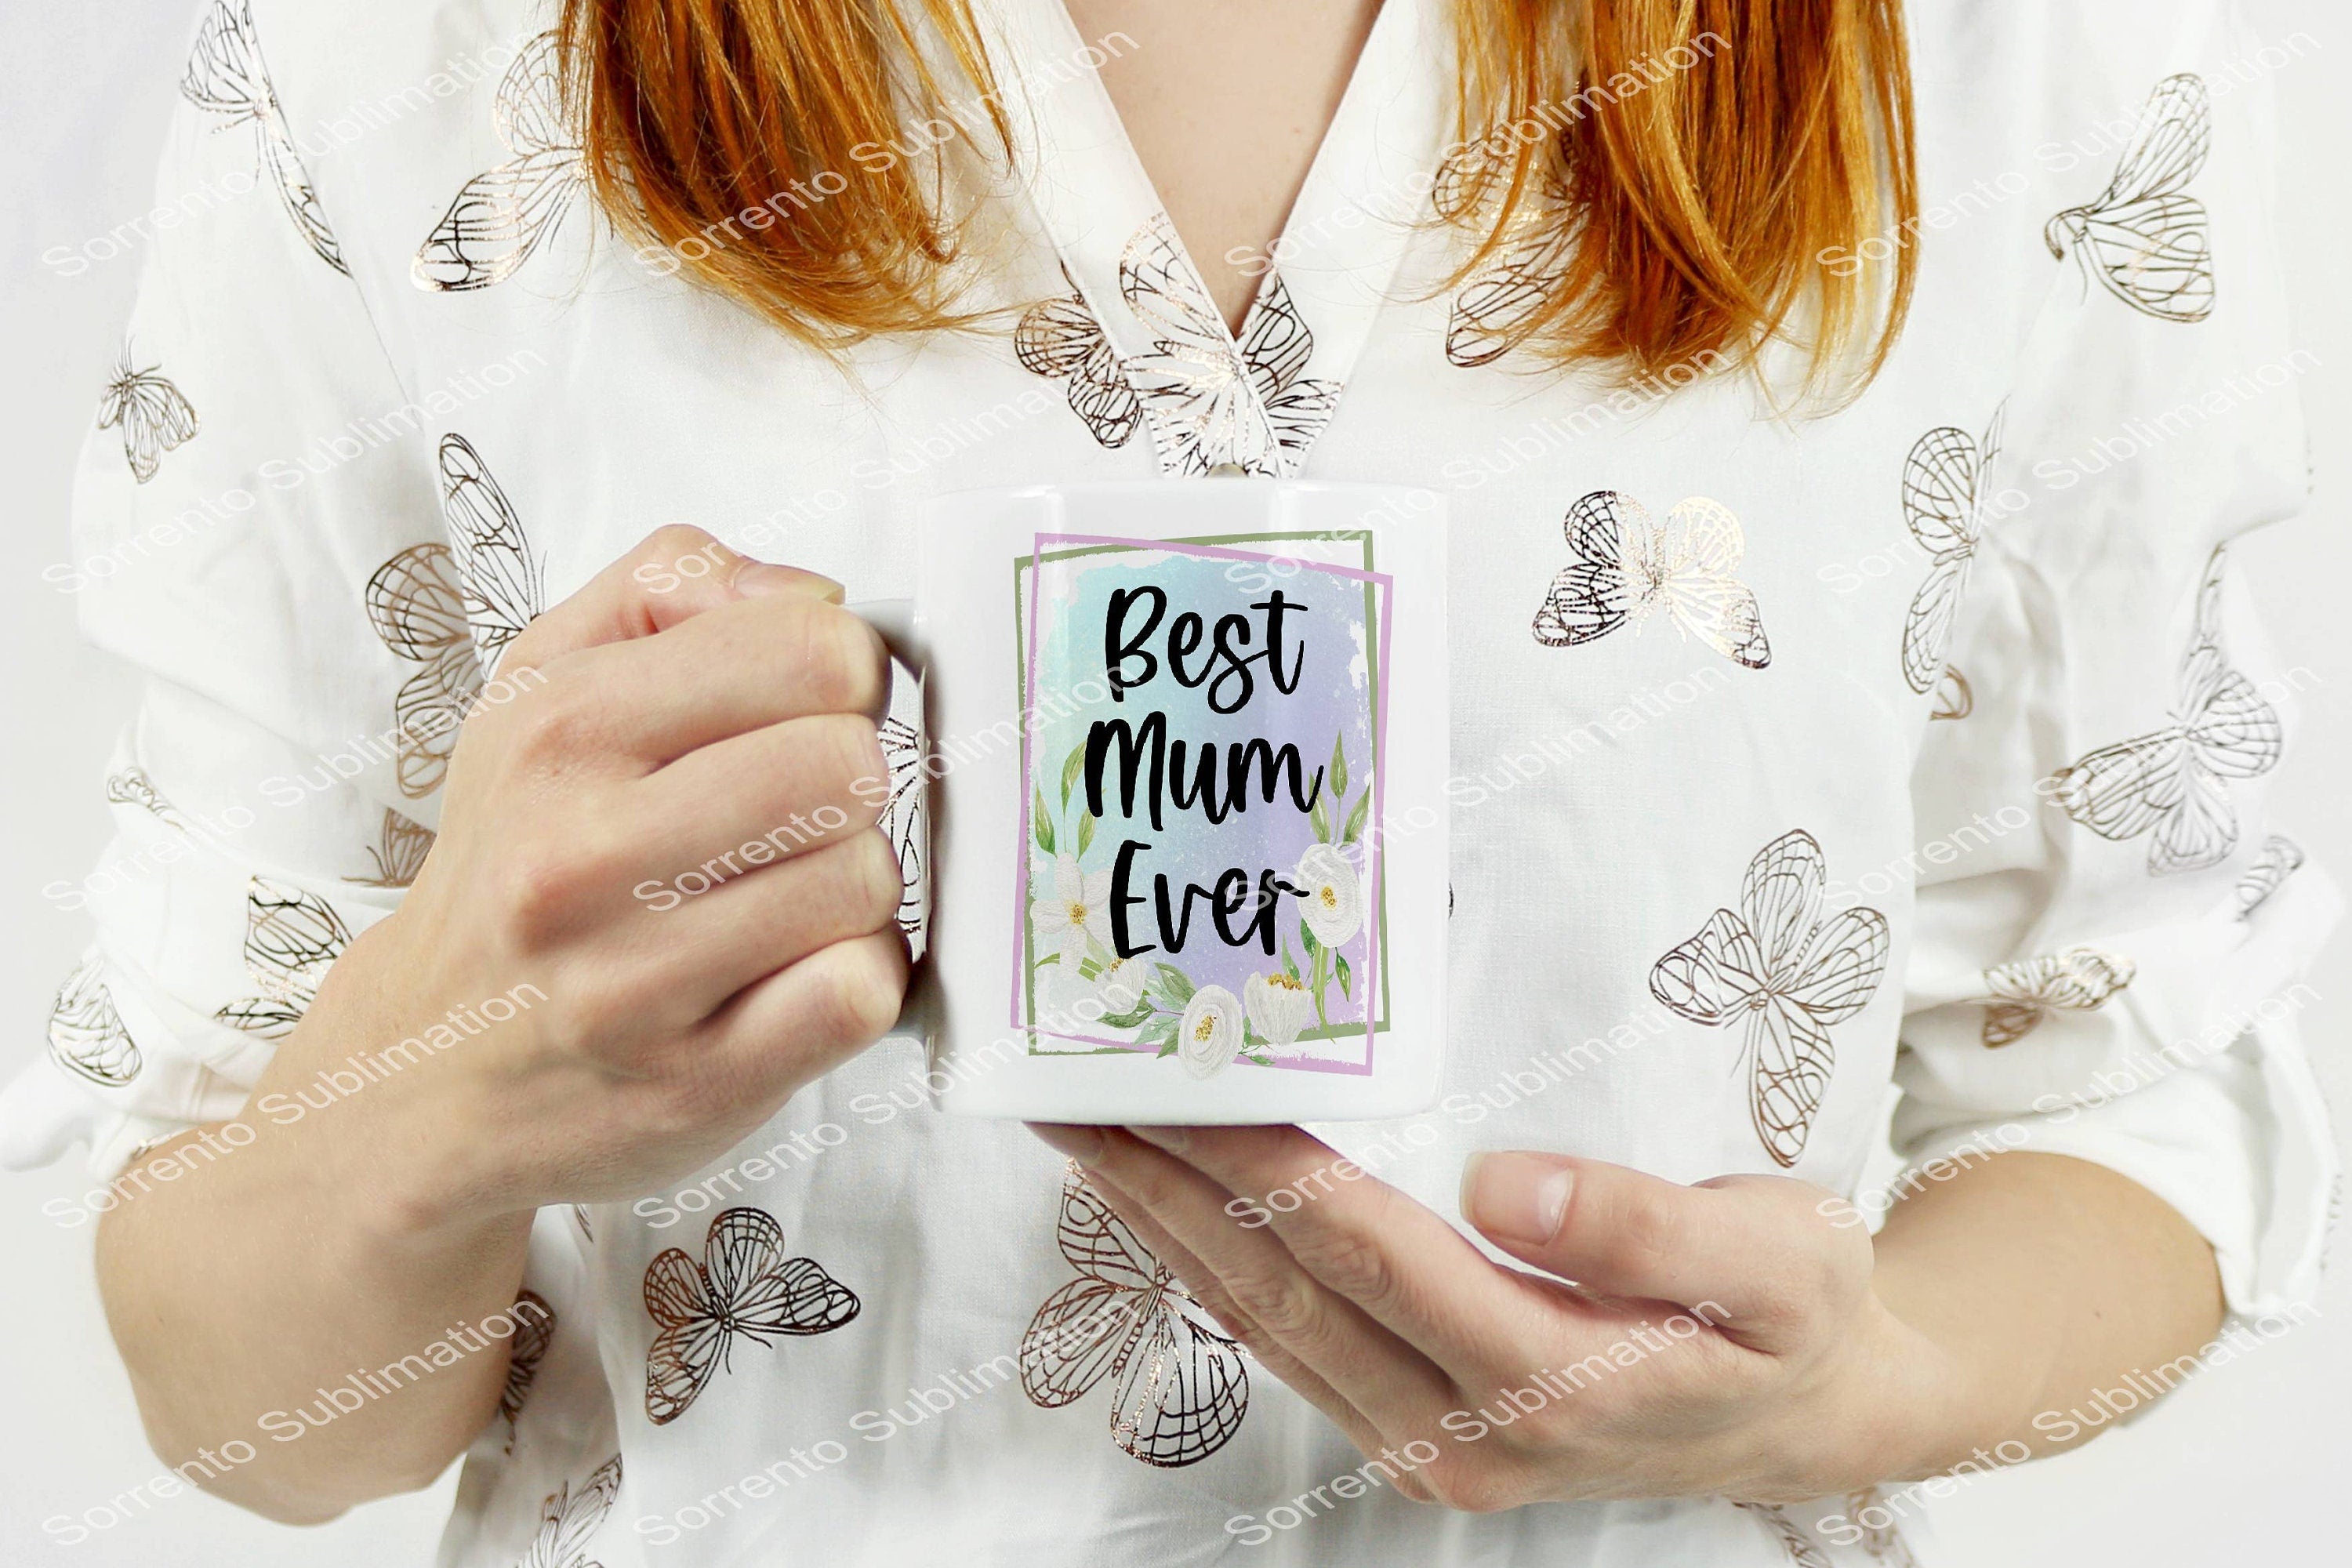 Best Mum Ever 12 oz. Mug Sublimation Mug. Hot or Cold. White Glossy Mug.